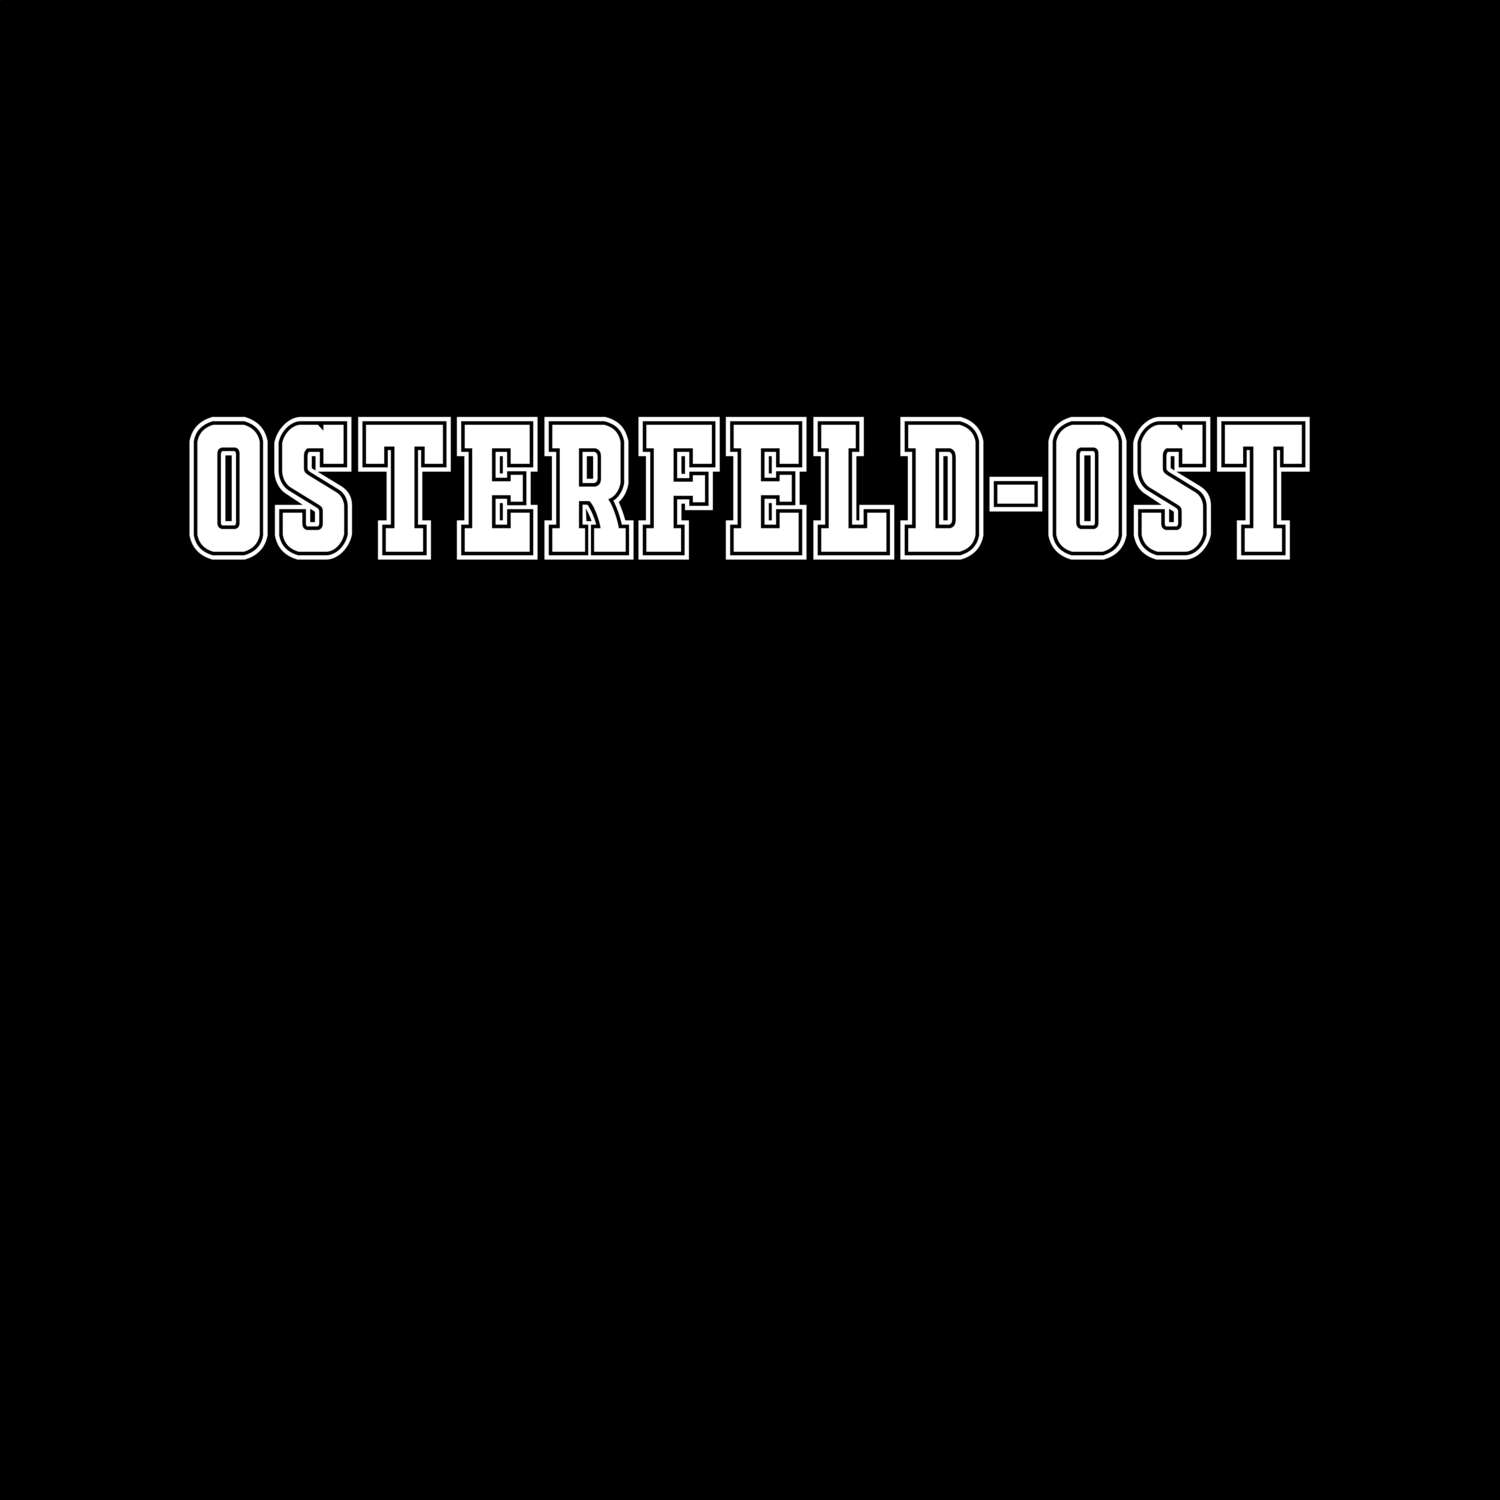 Osterfeld-Ost T-Shirt »Classic«